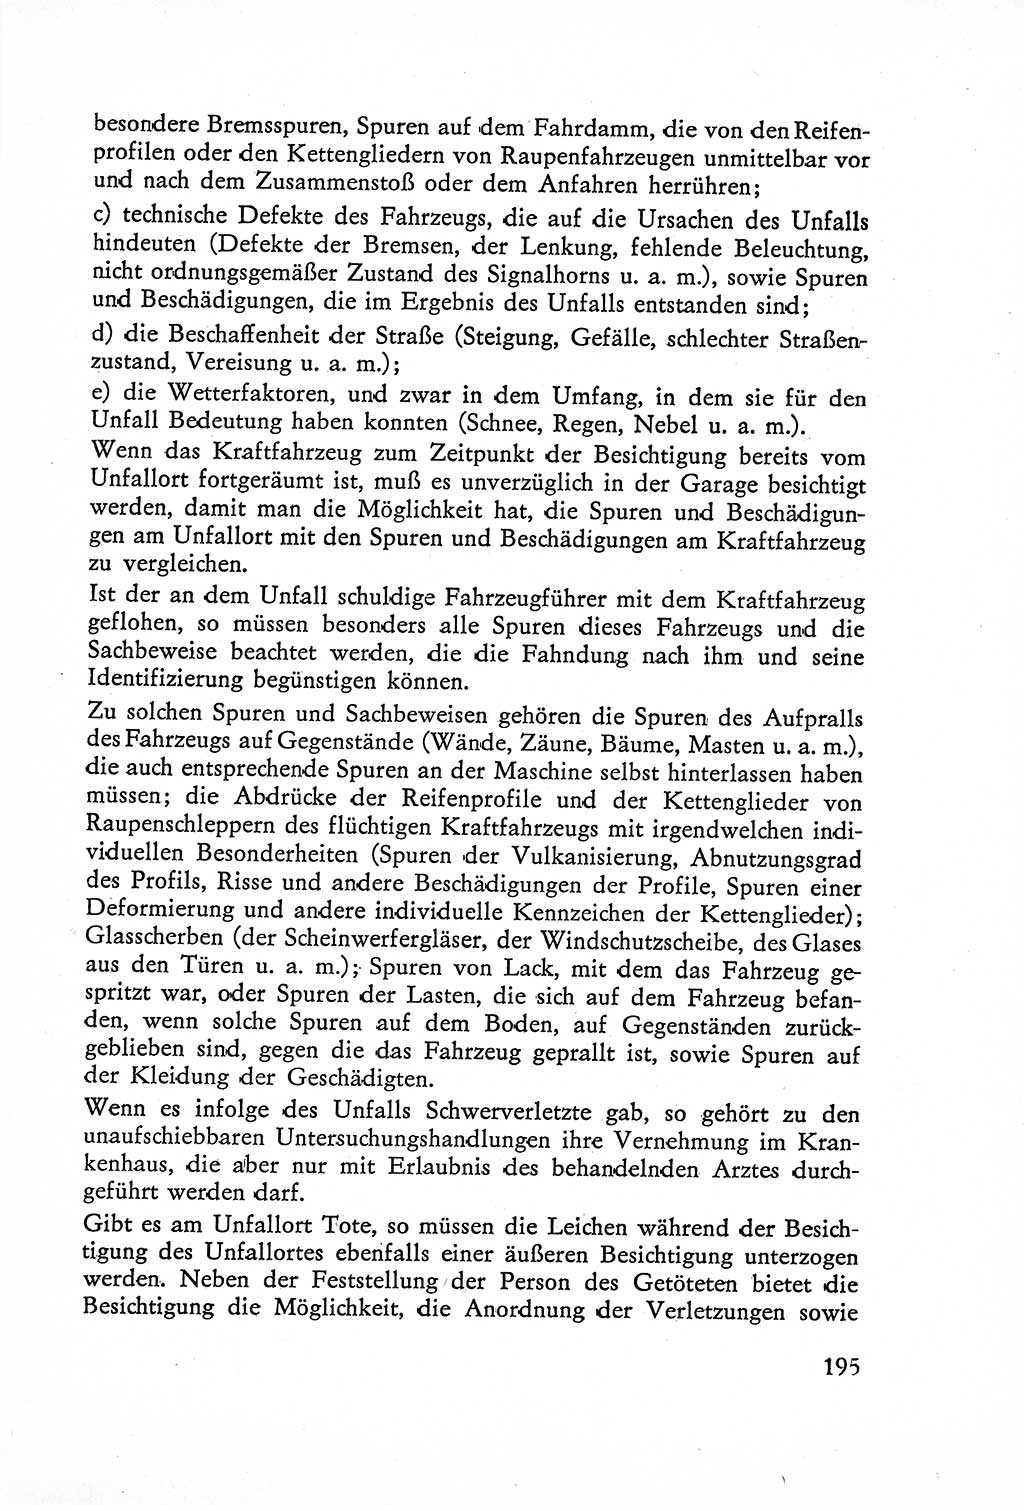 Die Untersuchung einzelner Verbrechensarten [Deutsche Demokratische Republik (DDR)] 1960, Seite 195 (Unters. Verbr.-Art. DDR 1960, S. 195)